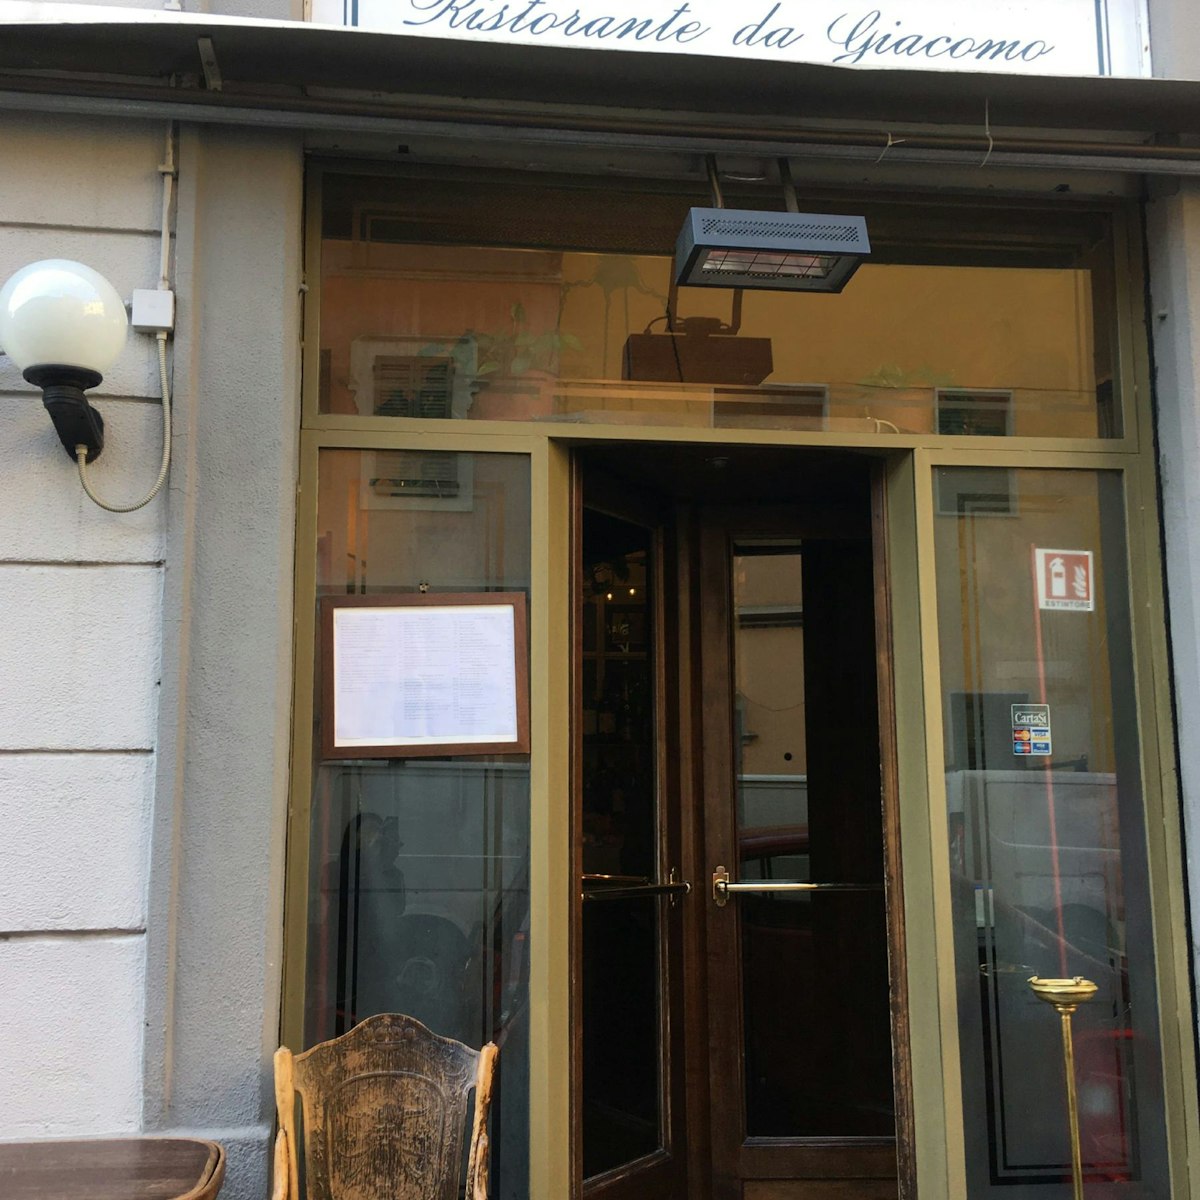 Entrance to Da Giacomo